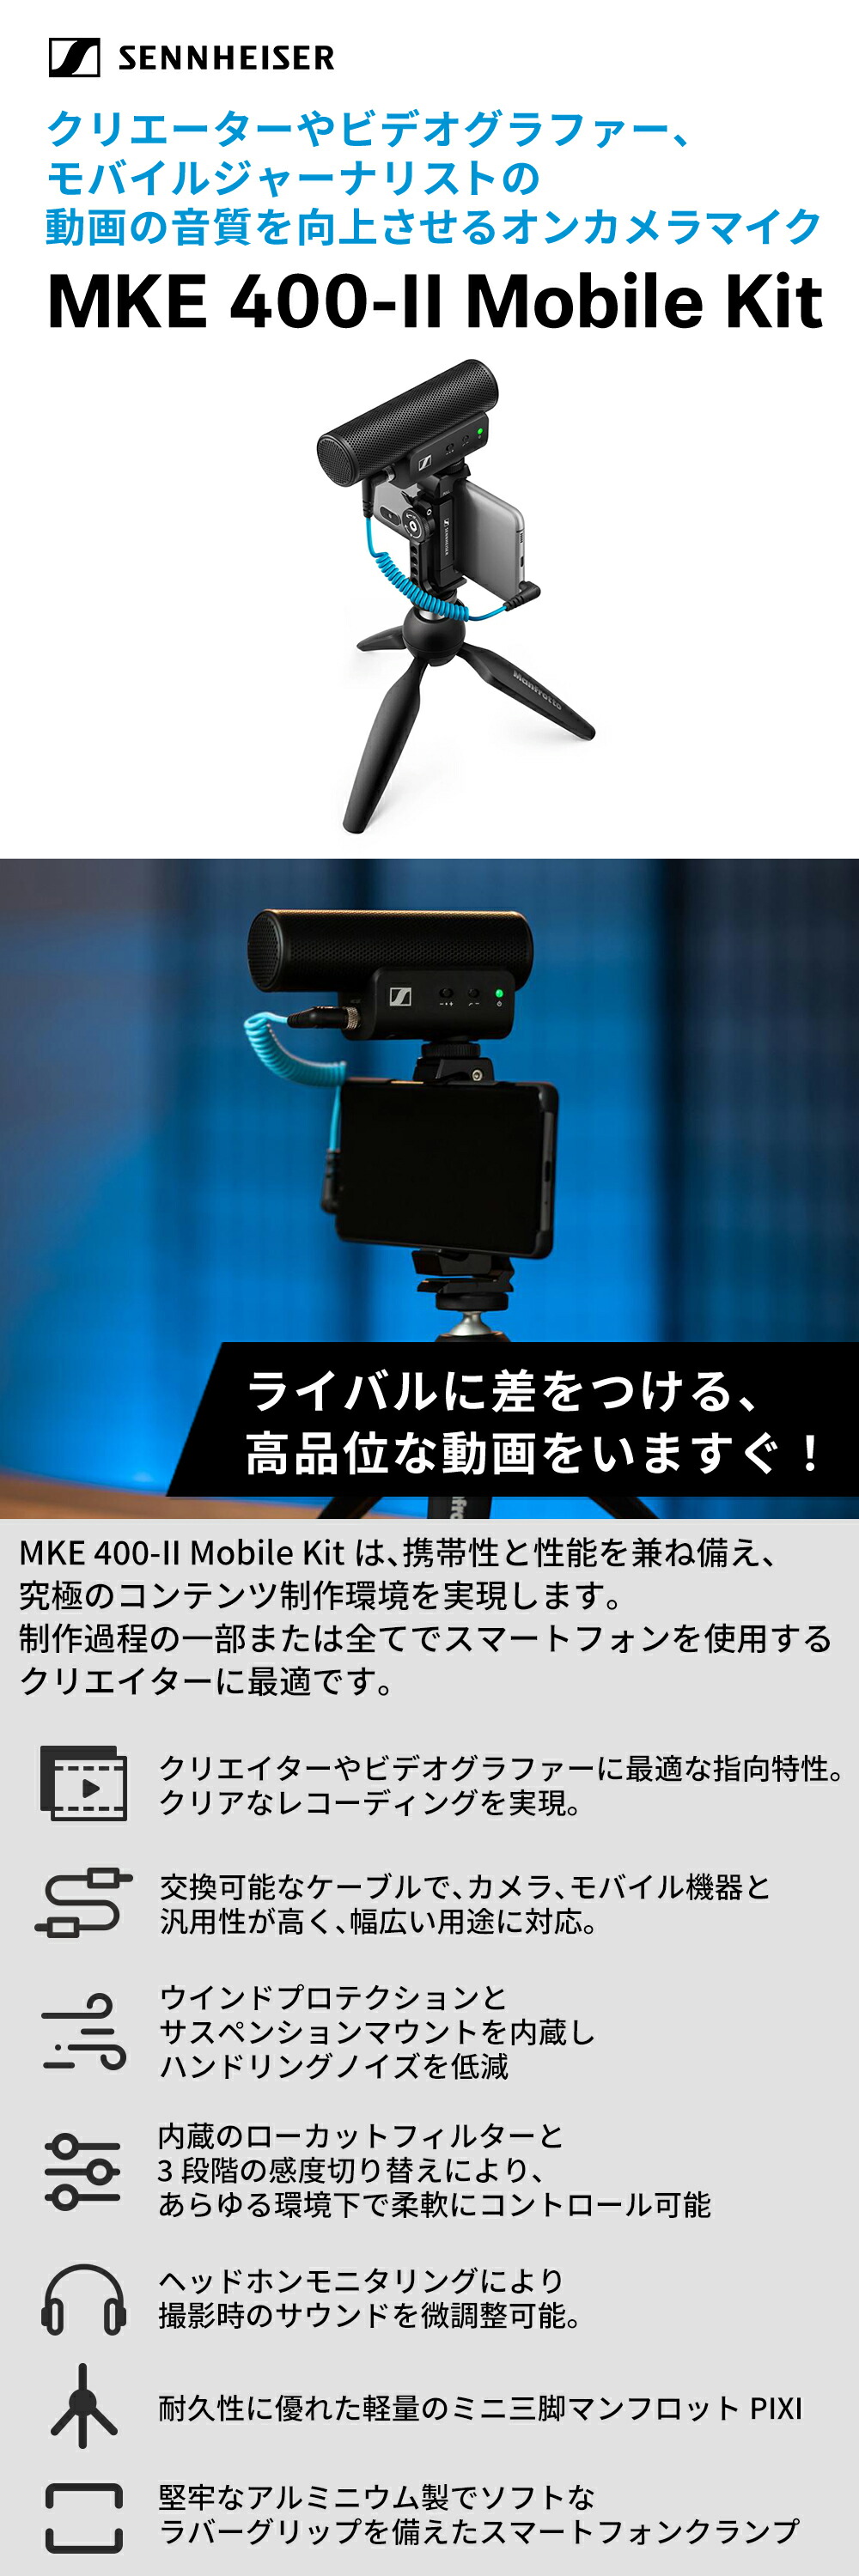 Sennheiser ゼンハイザー MKE 400-II MOBILE KIT オンカメラマイク 